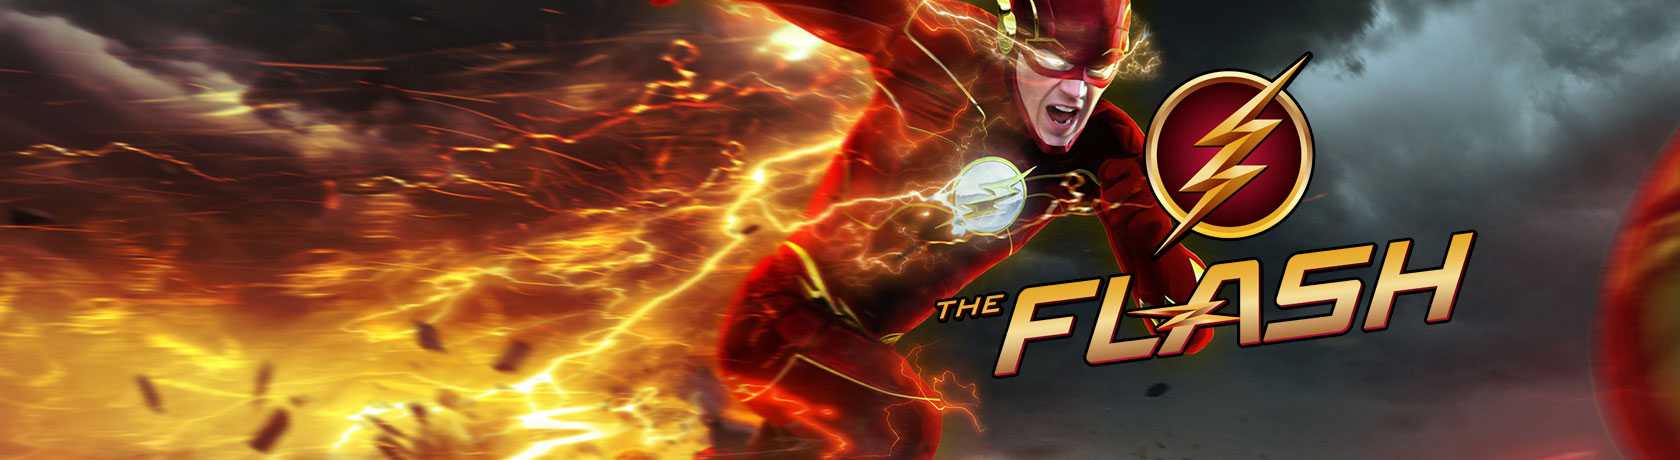 The Flash 8.Sezon 17.Bölüm izle